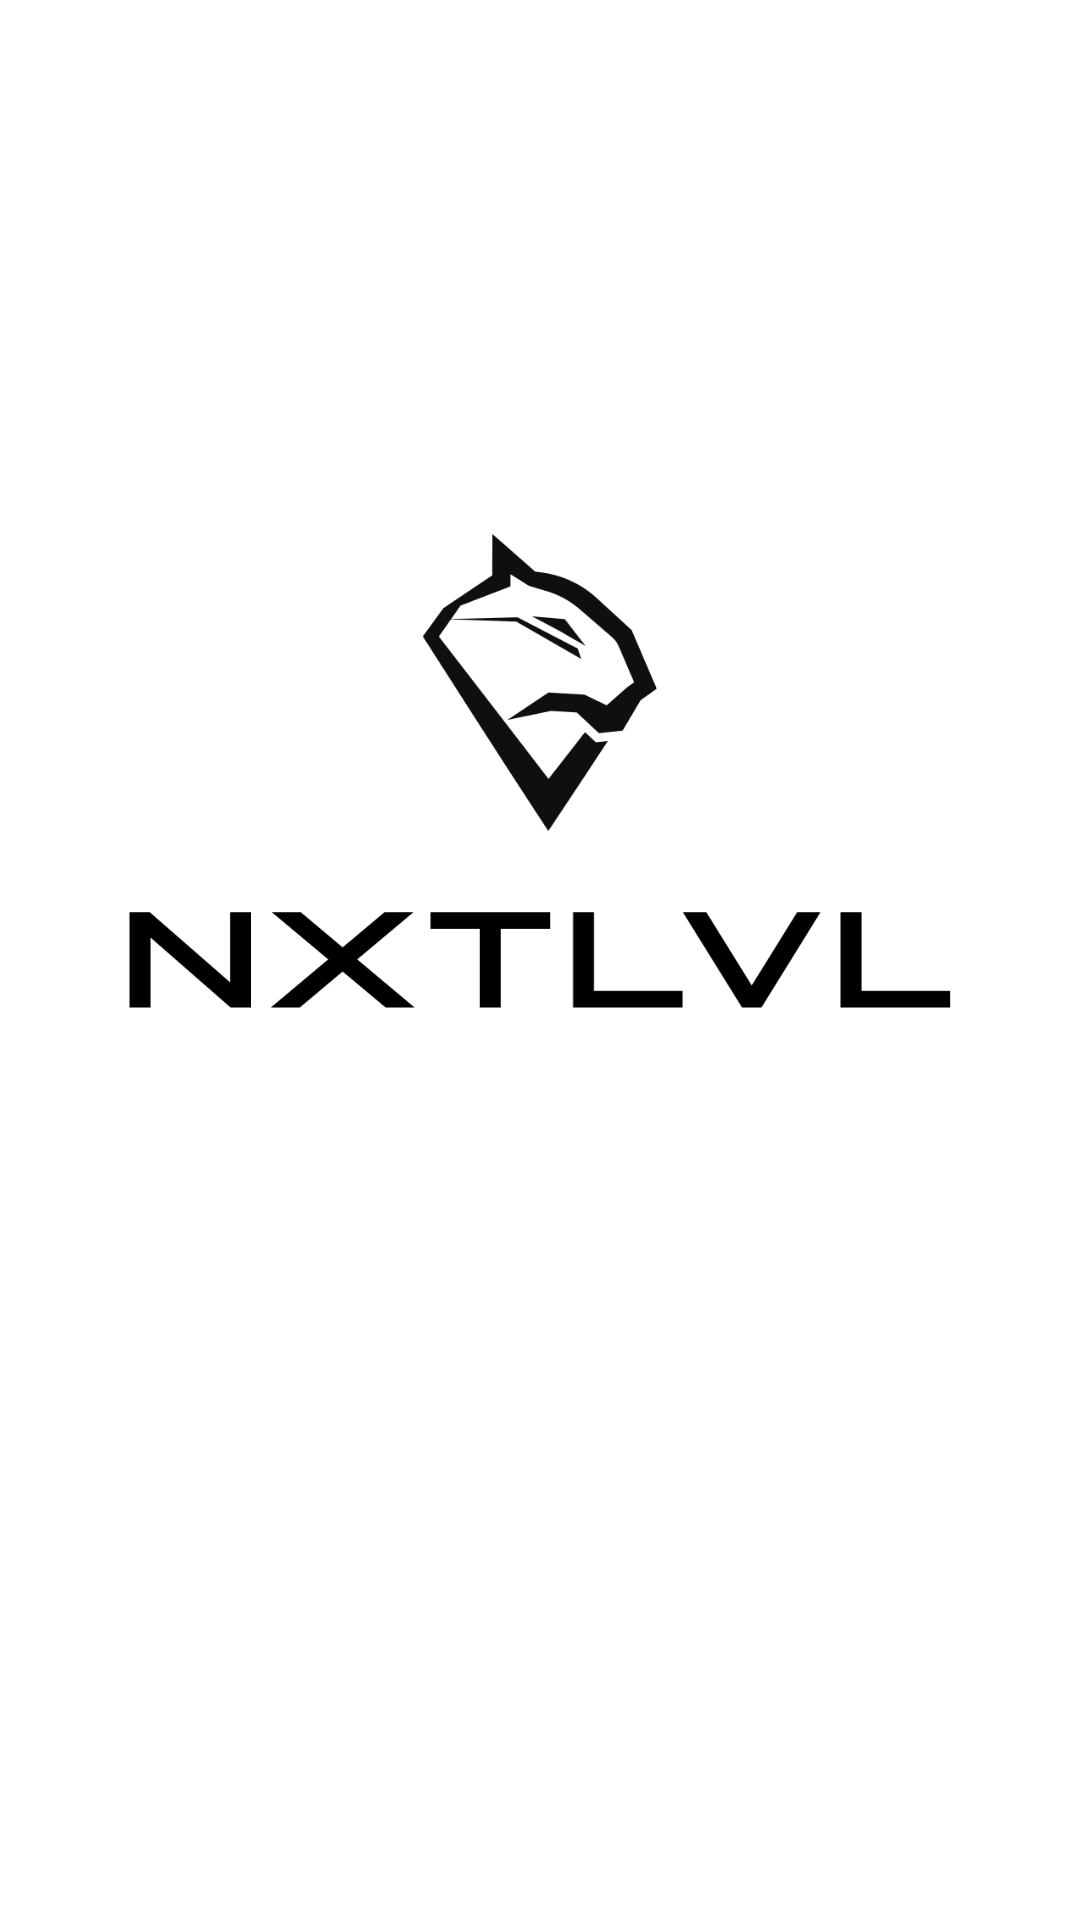 NXT LVL SHT – 502FIT